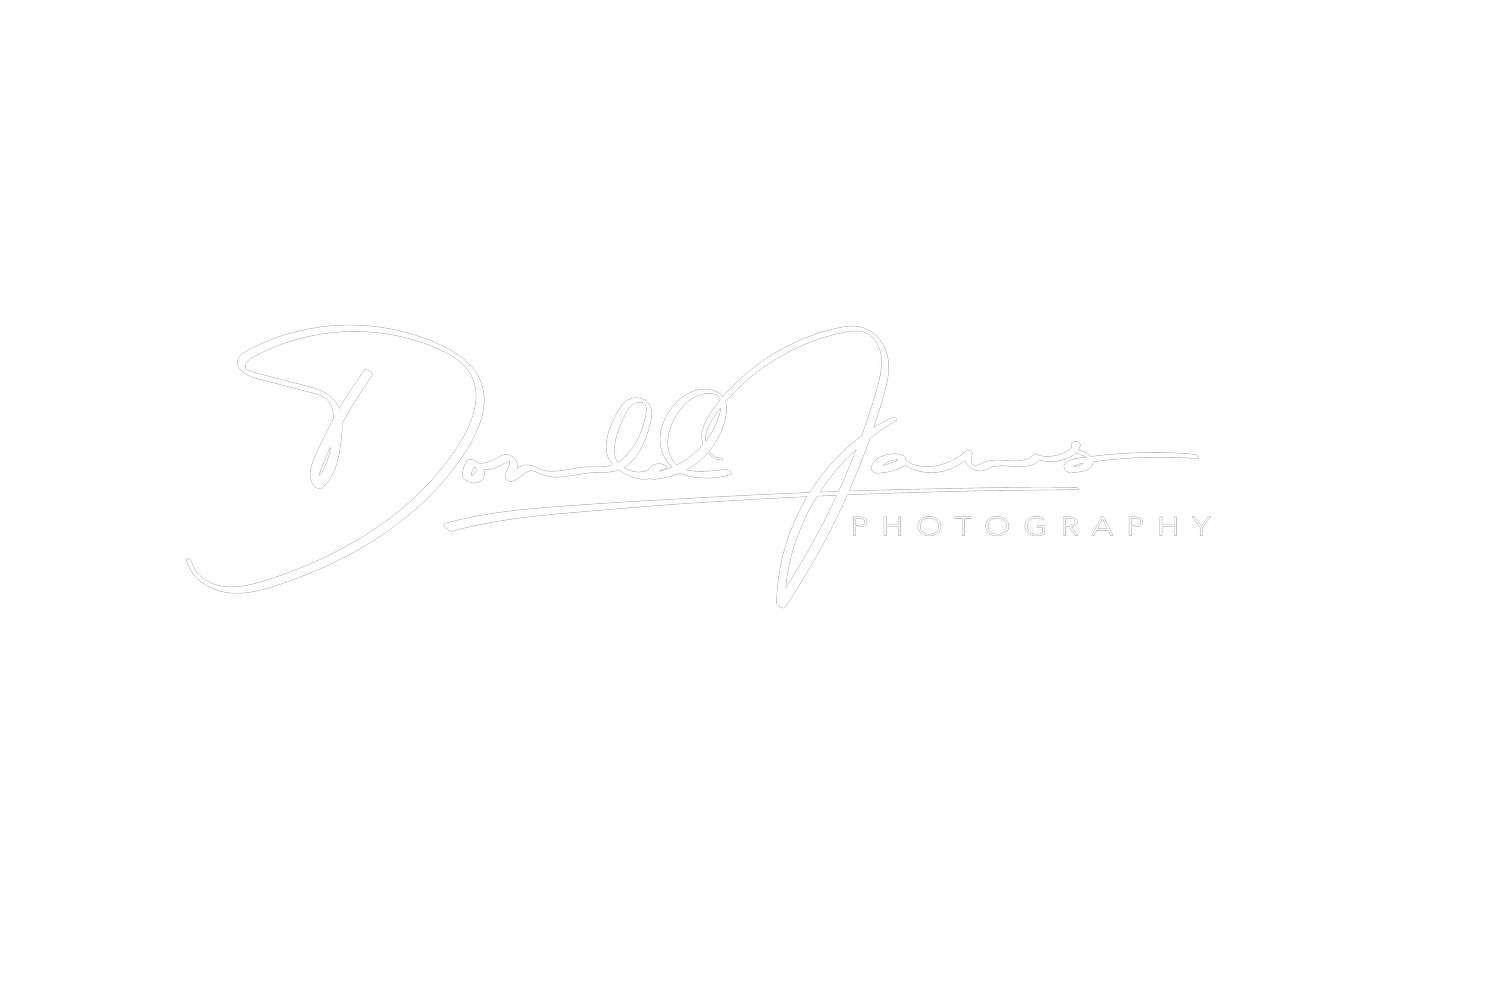 Donald James Photography